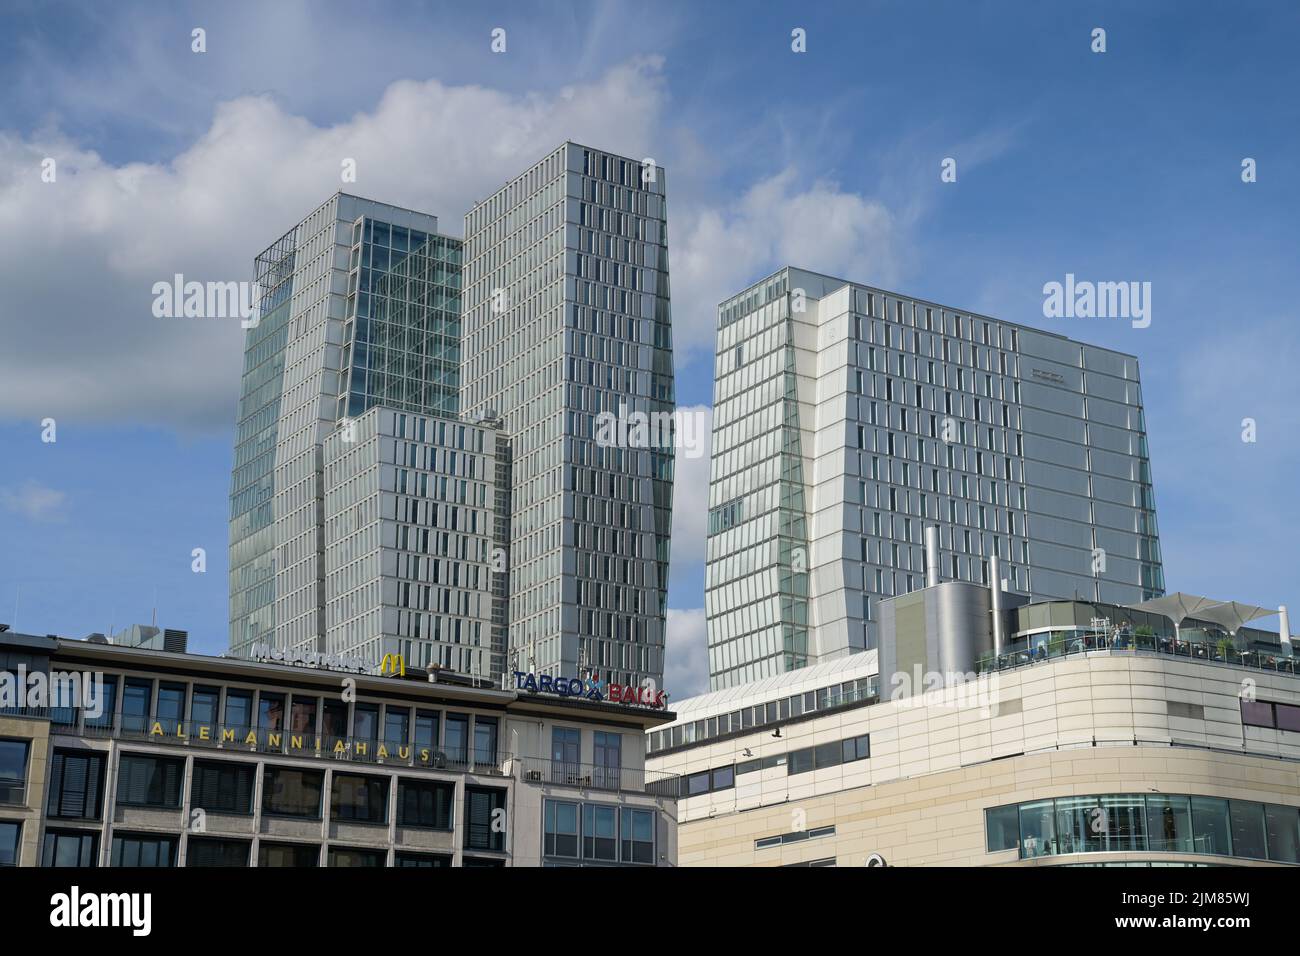 Nextower, Palaisquartier, Thurn-und-Taxis-Platz, Frankfurt am Main, Hessen, Deutschland Stock Photo